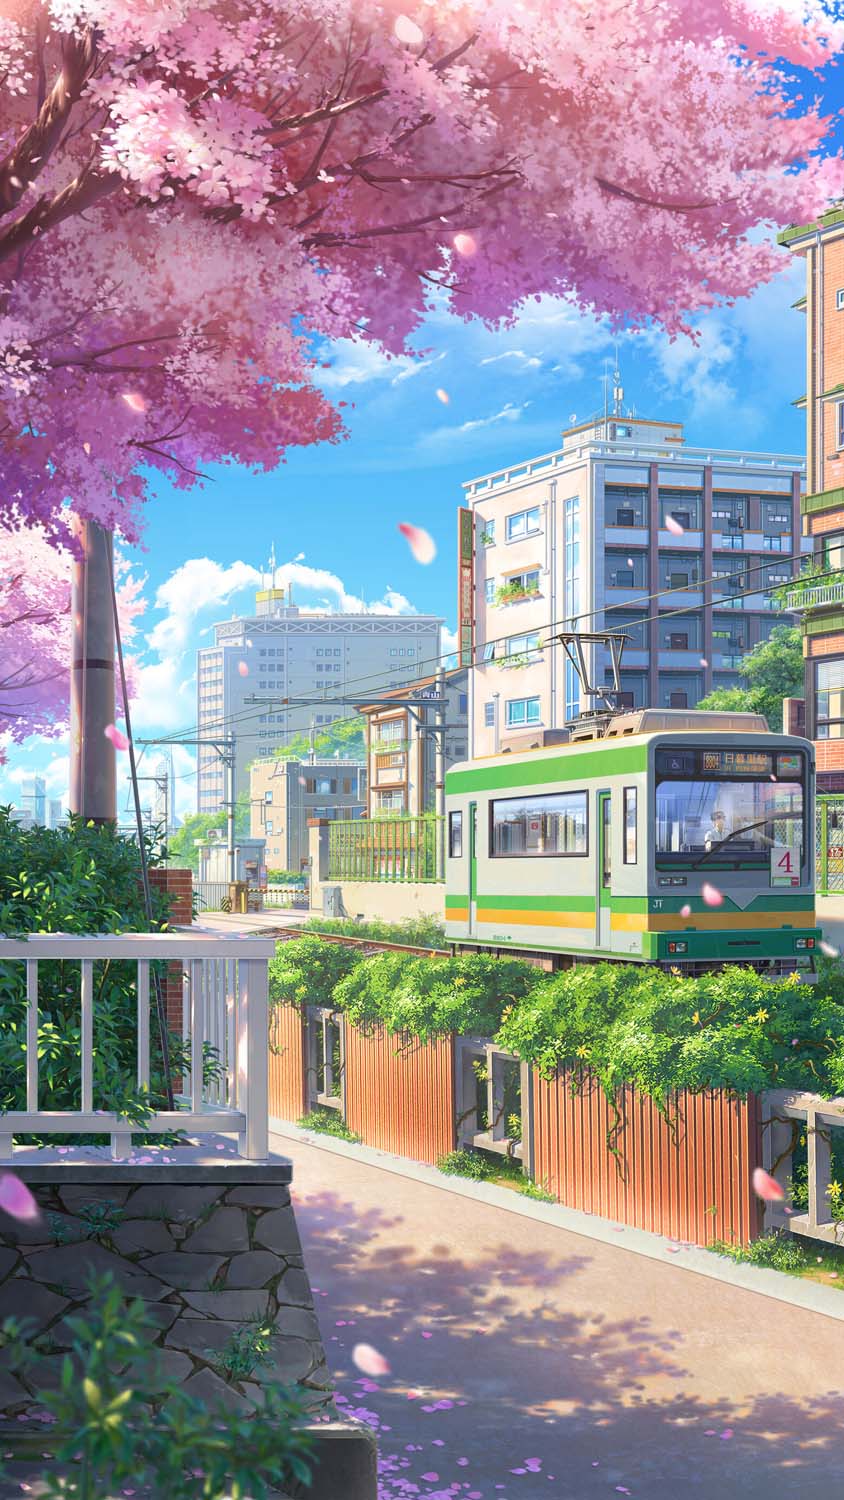 Nếu bạn yêu thích Anime và Tokyo, đừng bỏ lỡ hình ảnh này! Chỉ trong vài giây, bạn sẽ được truyền cảm hứng bởi vẻ đẹp của thành phố đầy Anime này. Hãy khám phá \